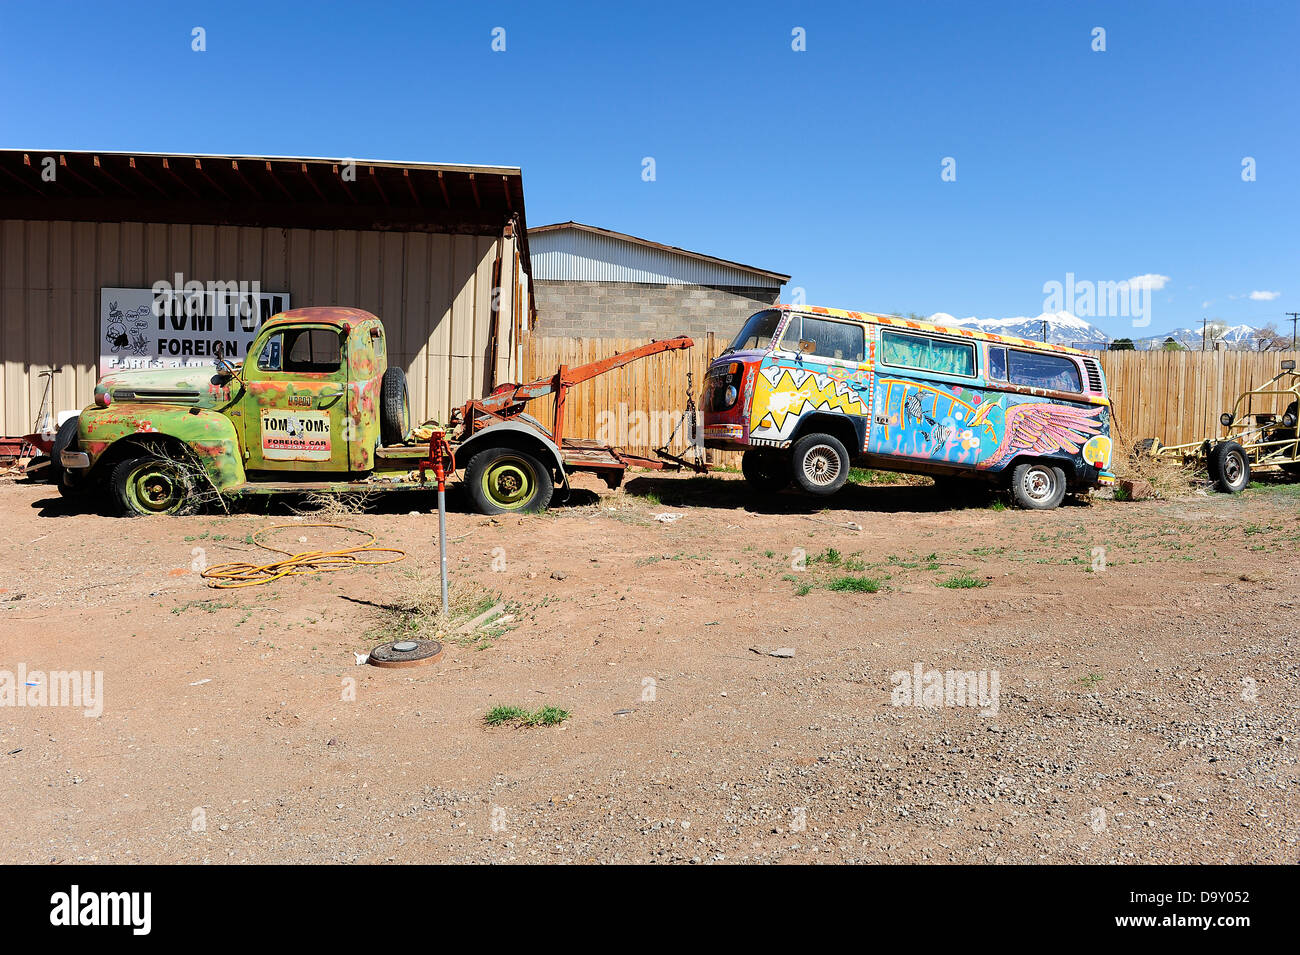 Painted Volkswagen camper van held up by breakdown truck, Moab, Utah, USA. Stock Photo